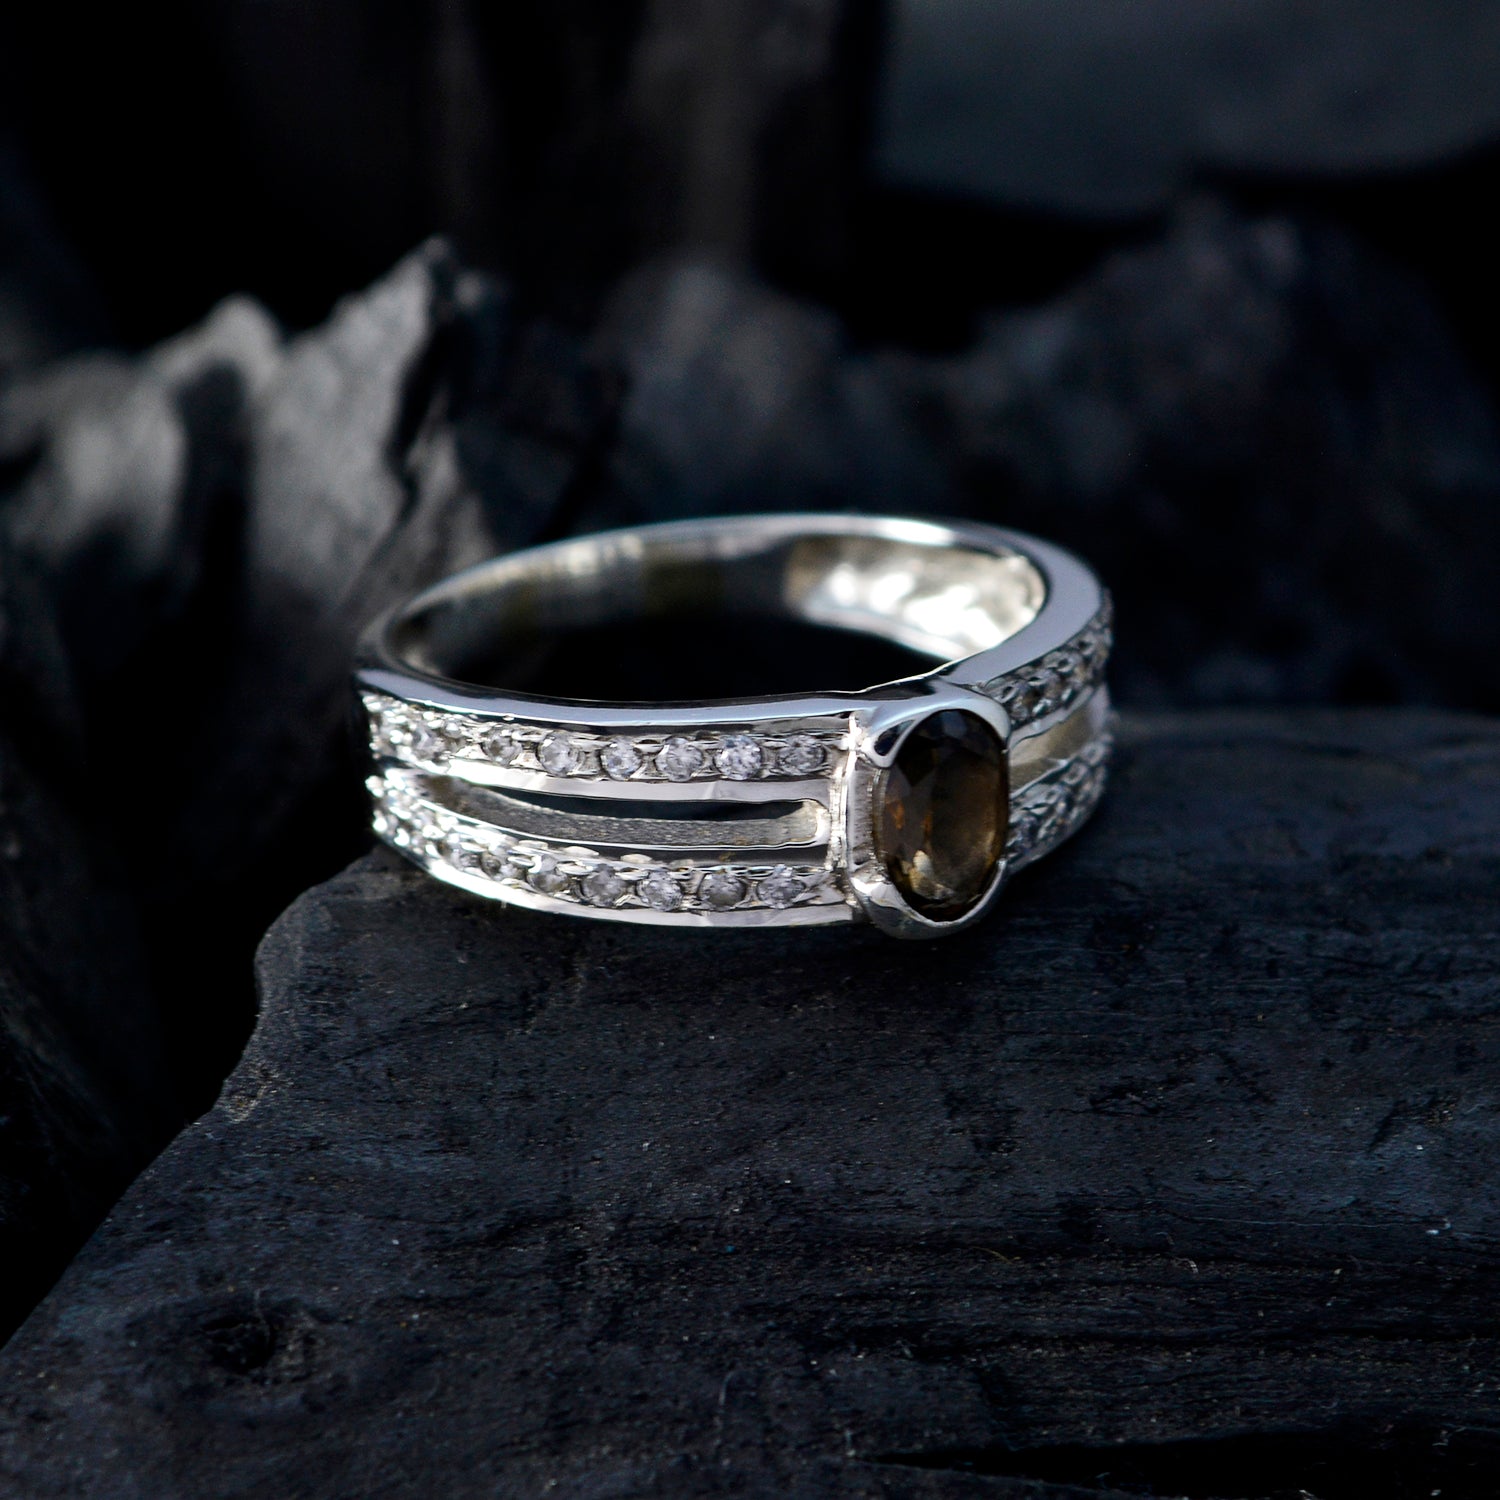 Riyo venta al por mayor de piedras preciosas de cuarzo ahumado anillo de plata 925 joyería de la suerte